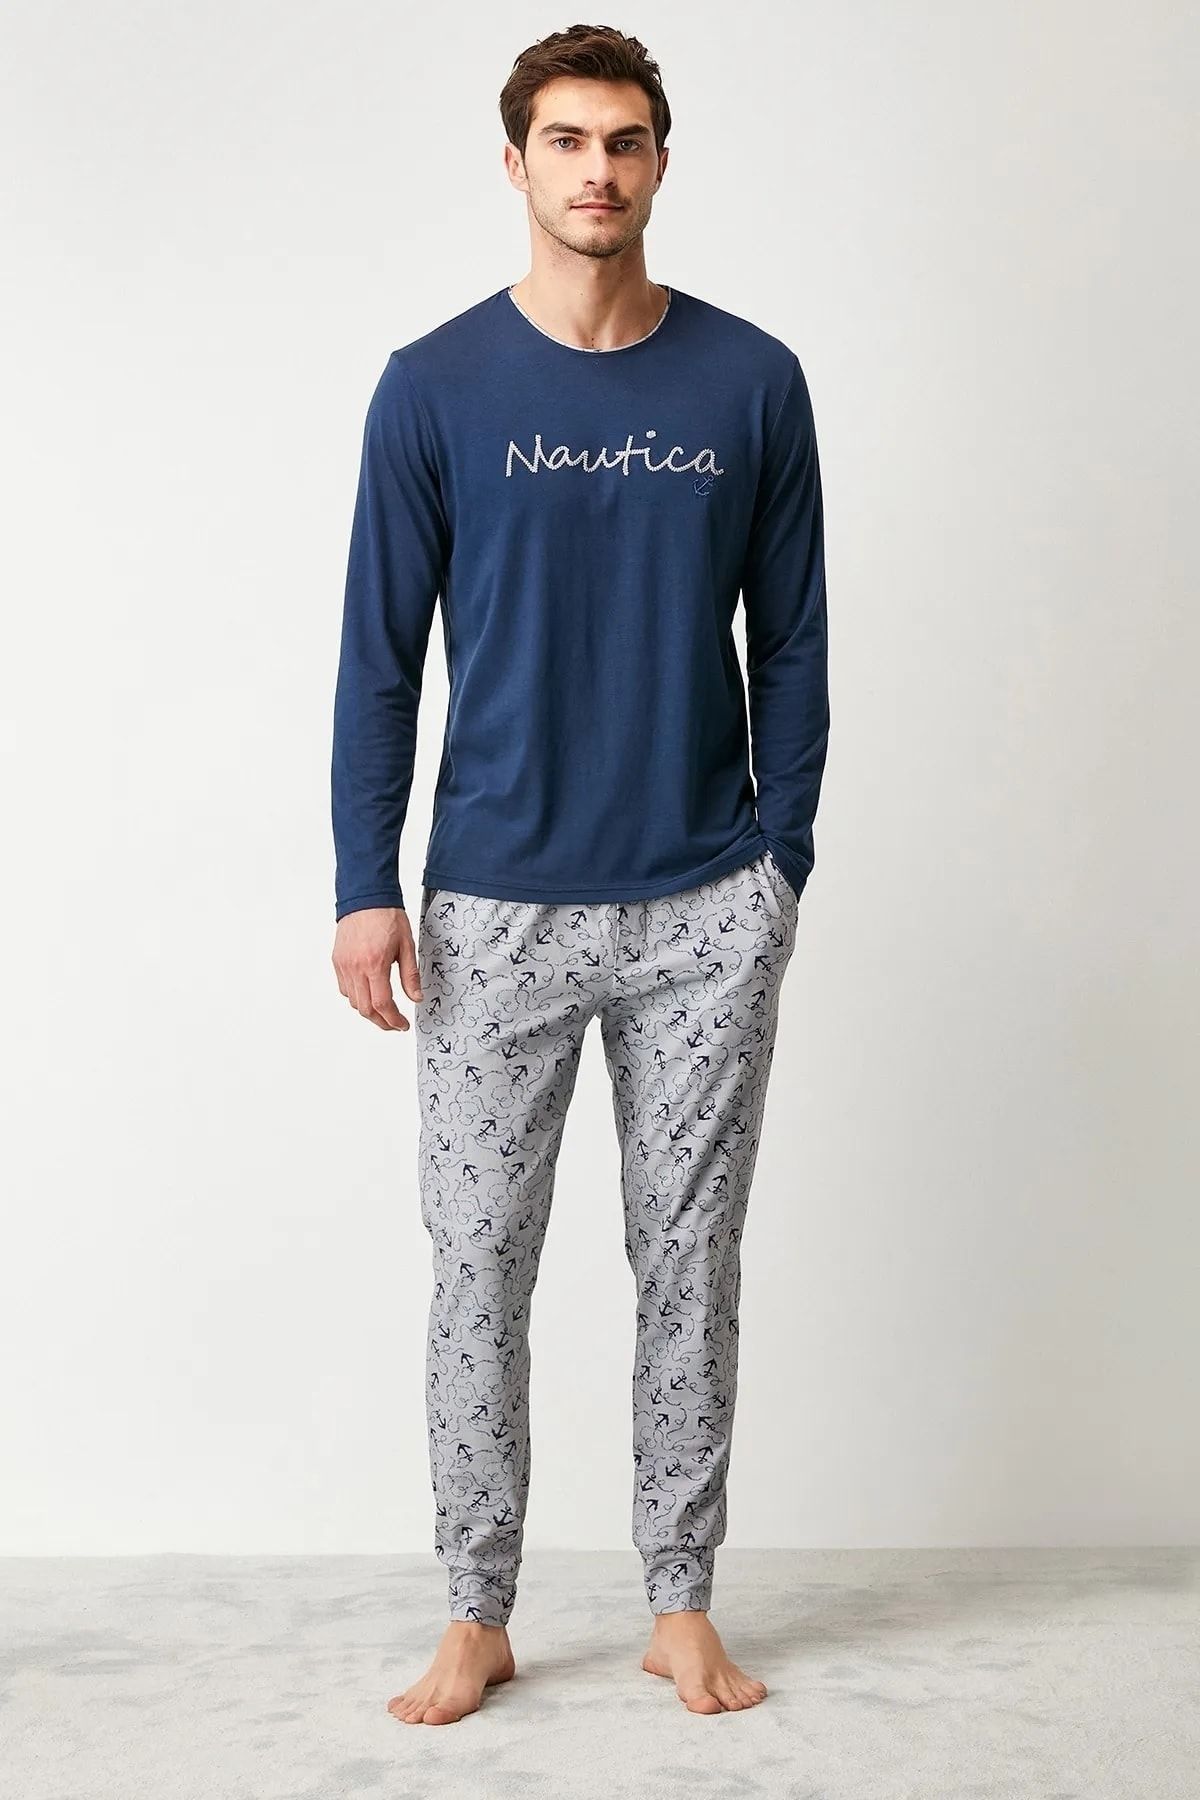 Nautica Sıfır Yaka Modal Pamuk Erkek Pijama Takım  420